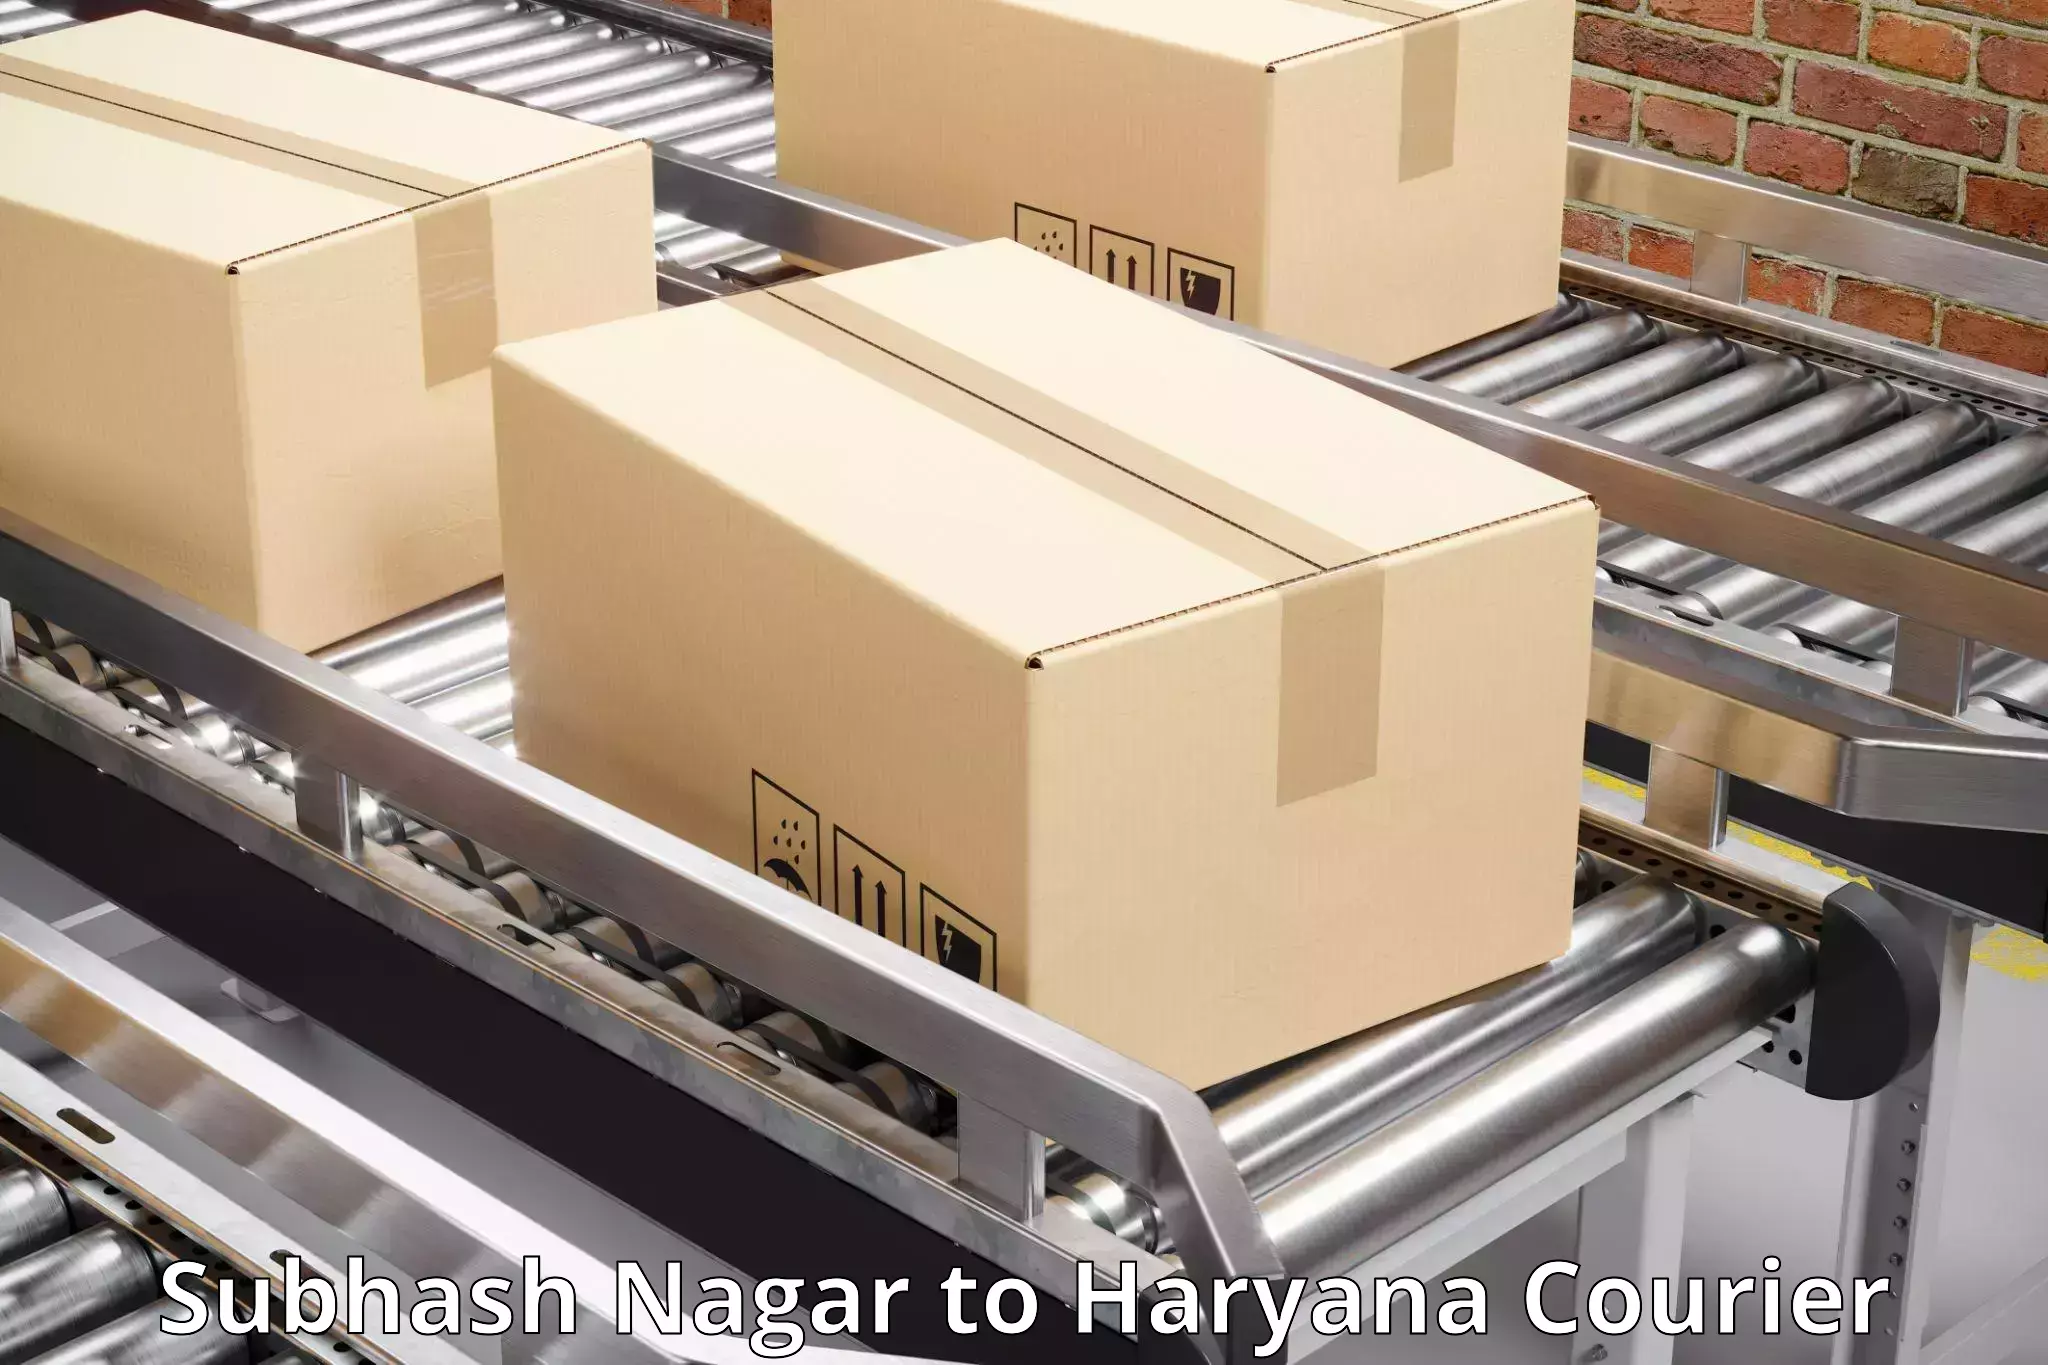 Courier service efficiency Subhash Nagar to Ellenabad